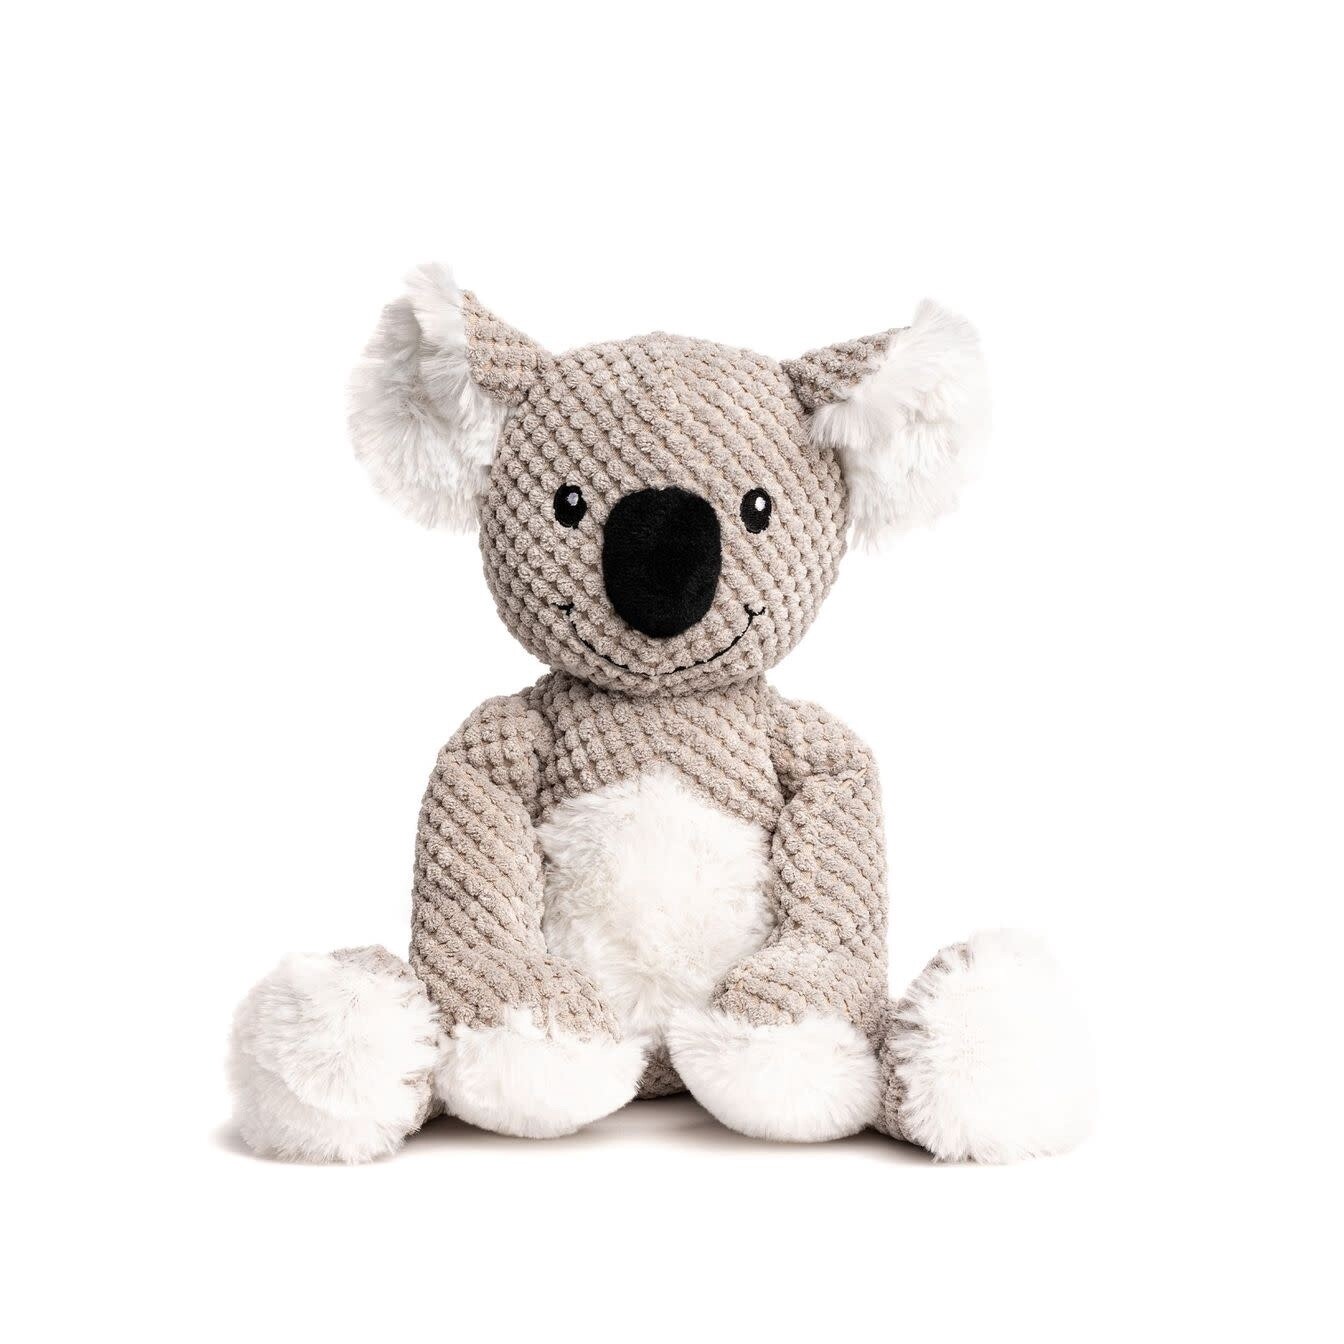 Fabdog Floppy Dog Toy - Koala, Size: Small